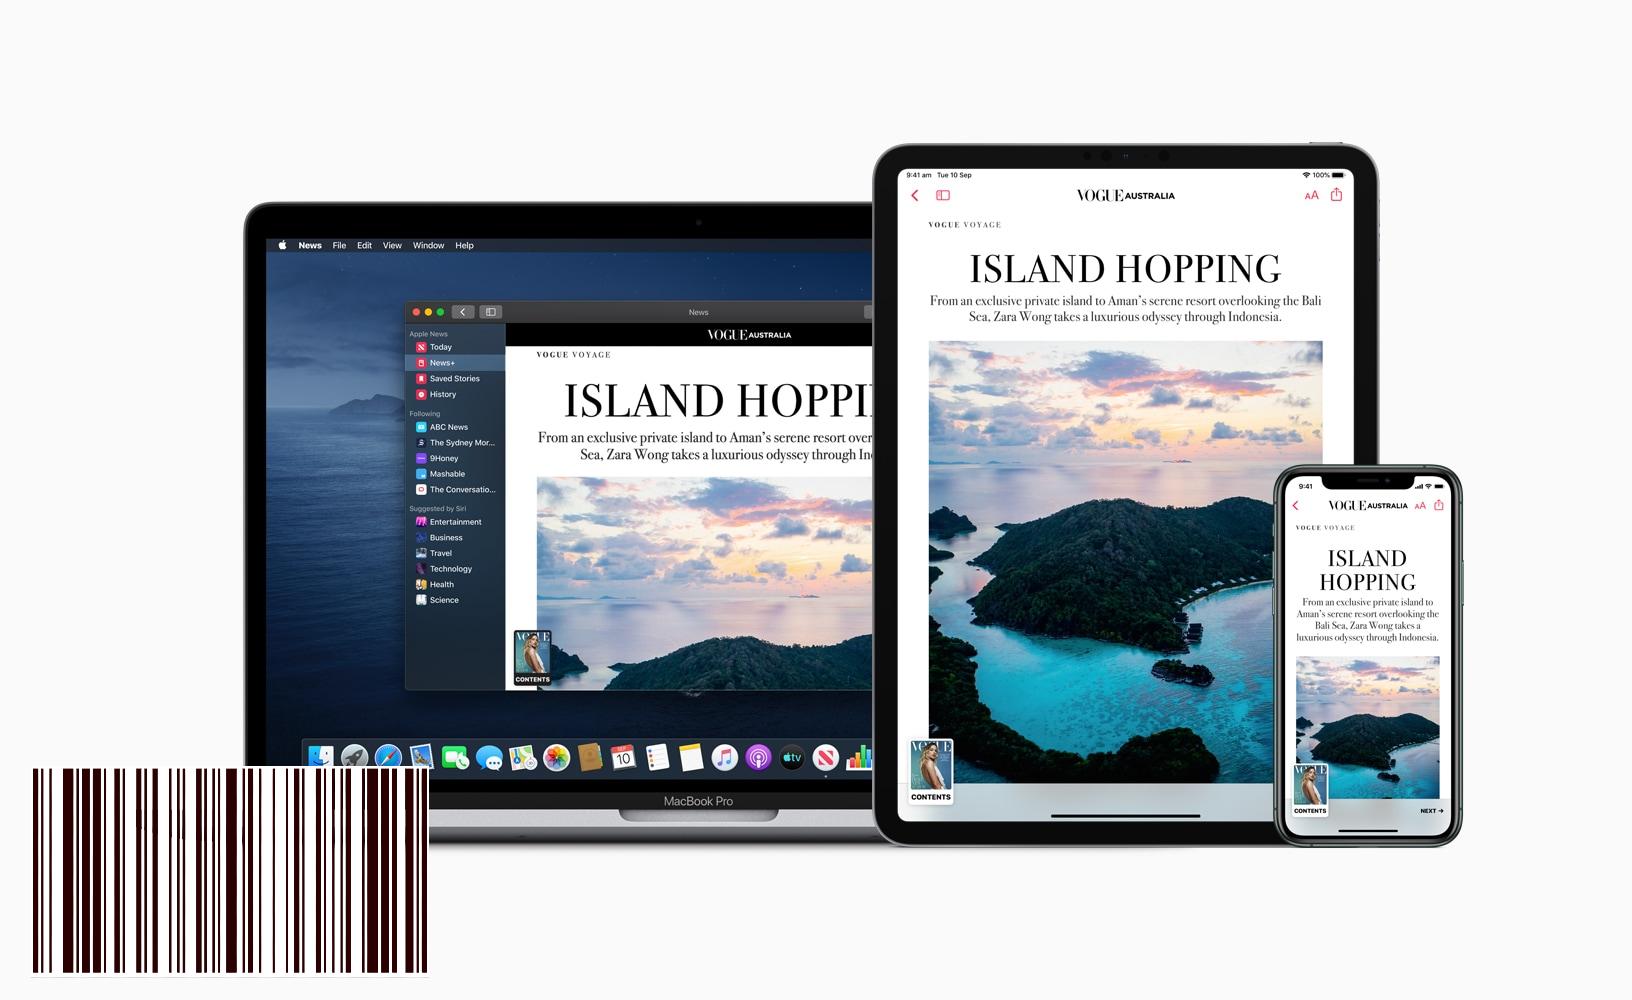 تصل أخبار Apple + إلى أستراليا والمملكة المتحدة من خلال العديد من المنشورات المحلية - MacMagazine.com